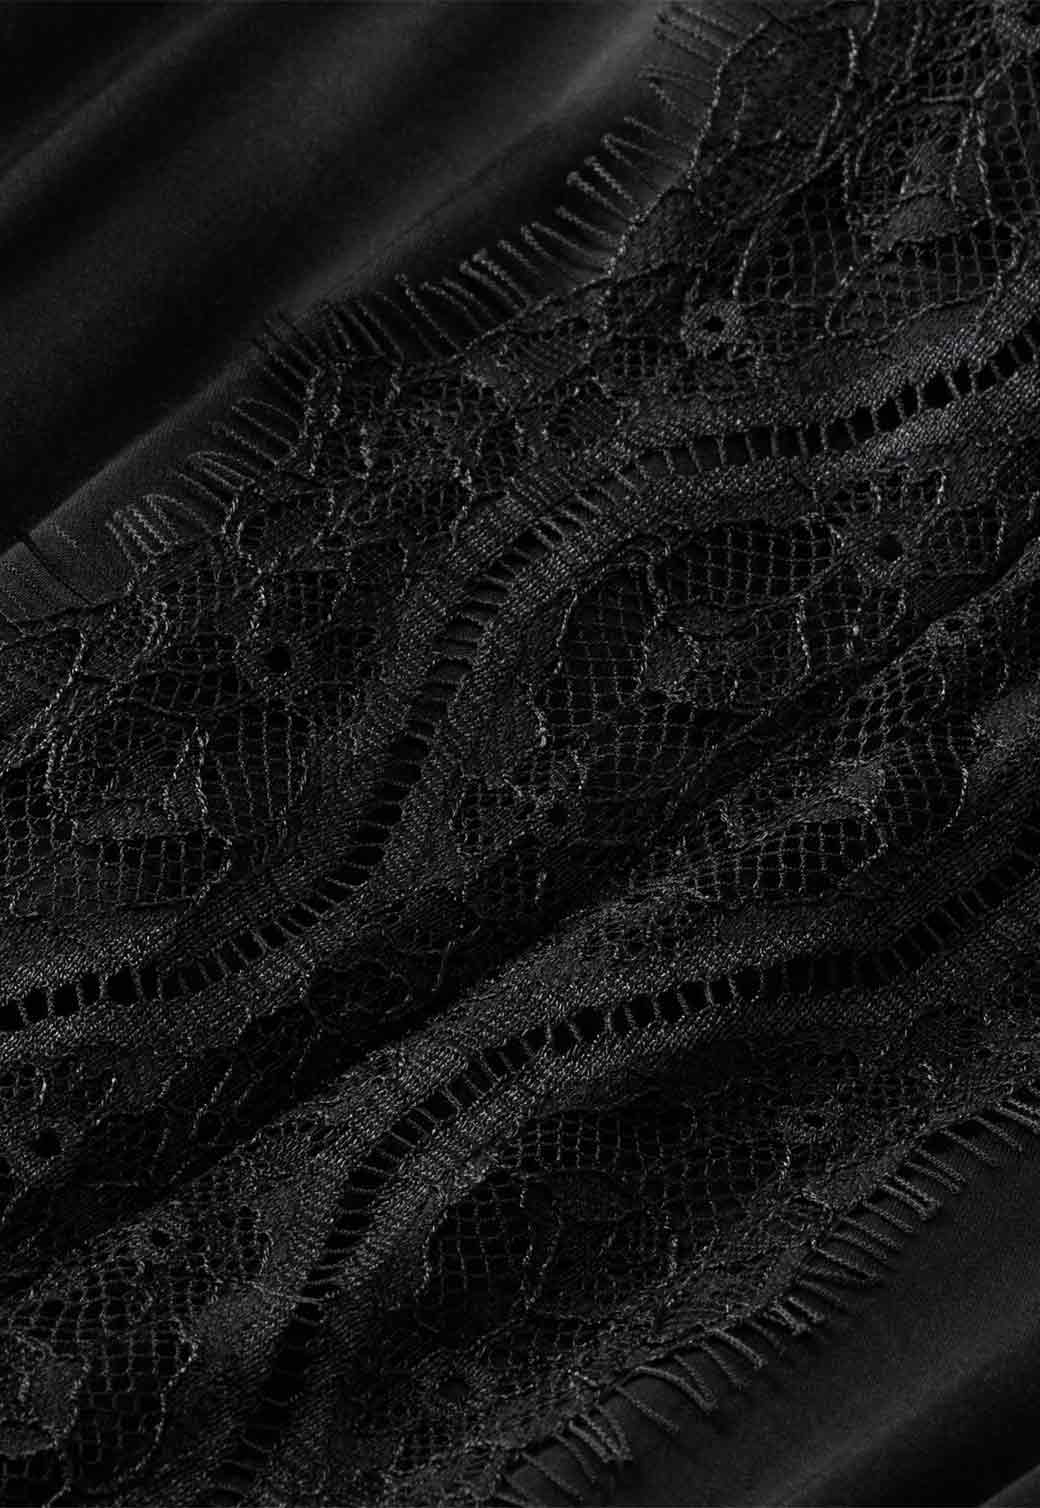 Black שמלת מקסי לנשים SCOTCH & SODA